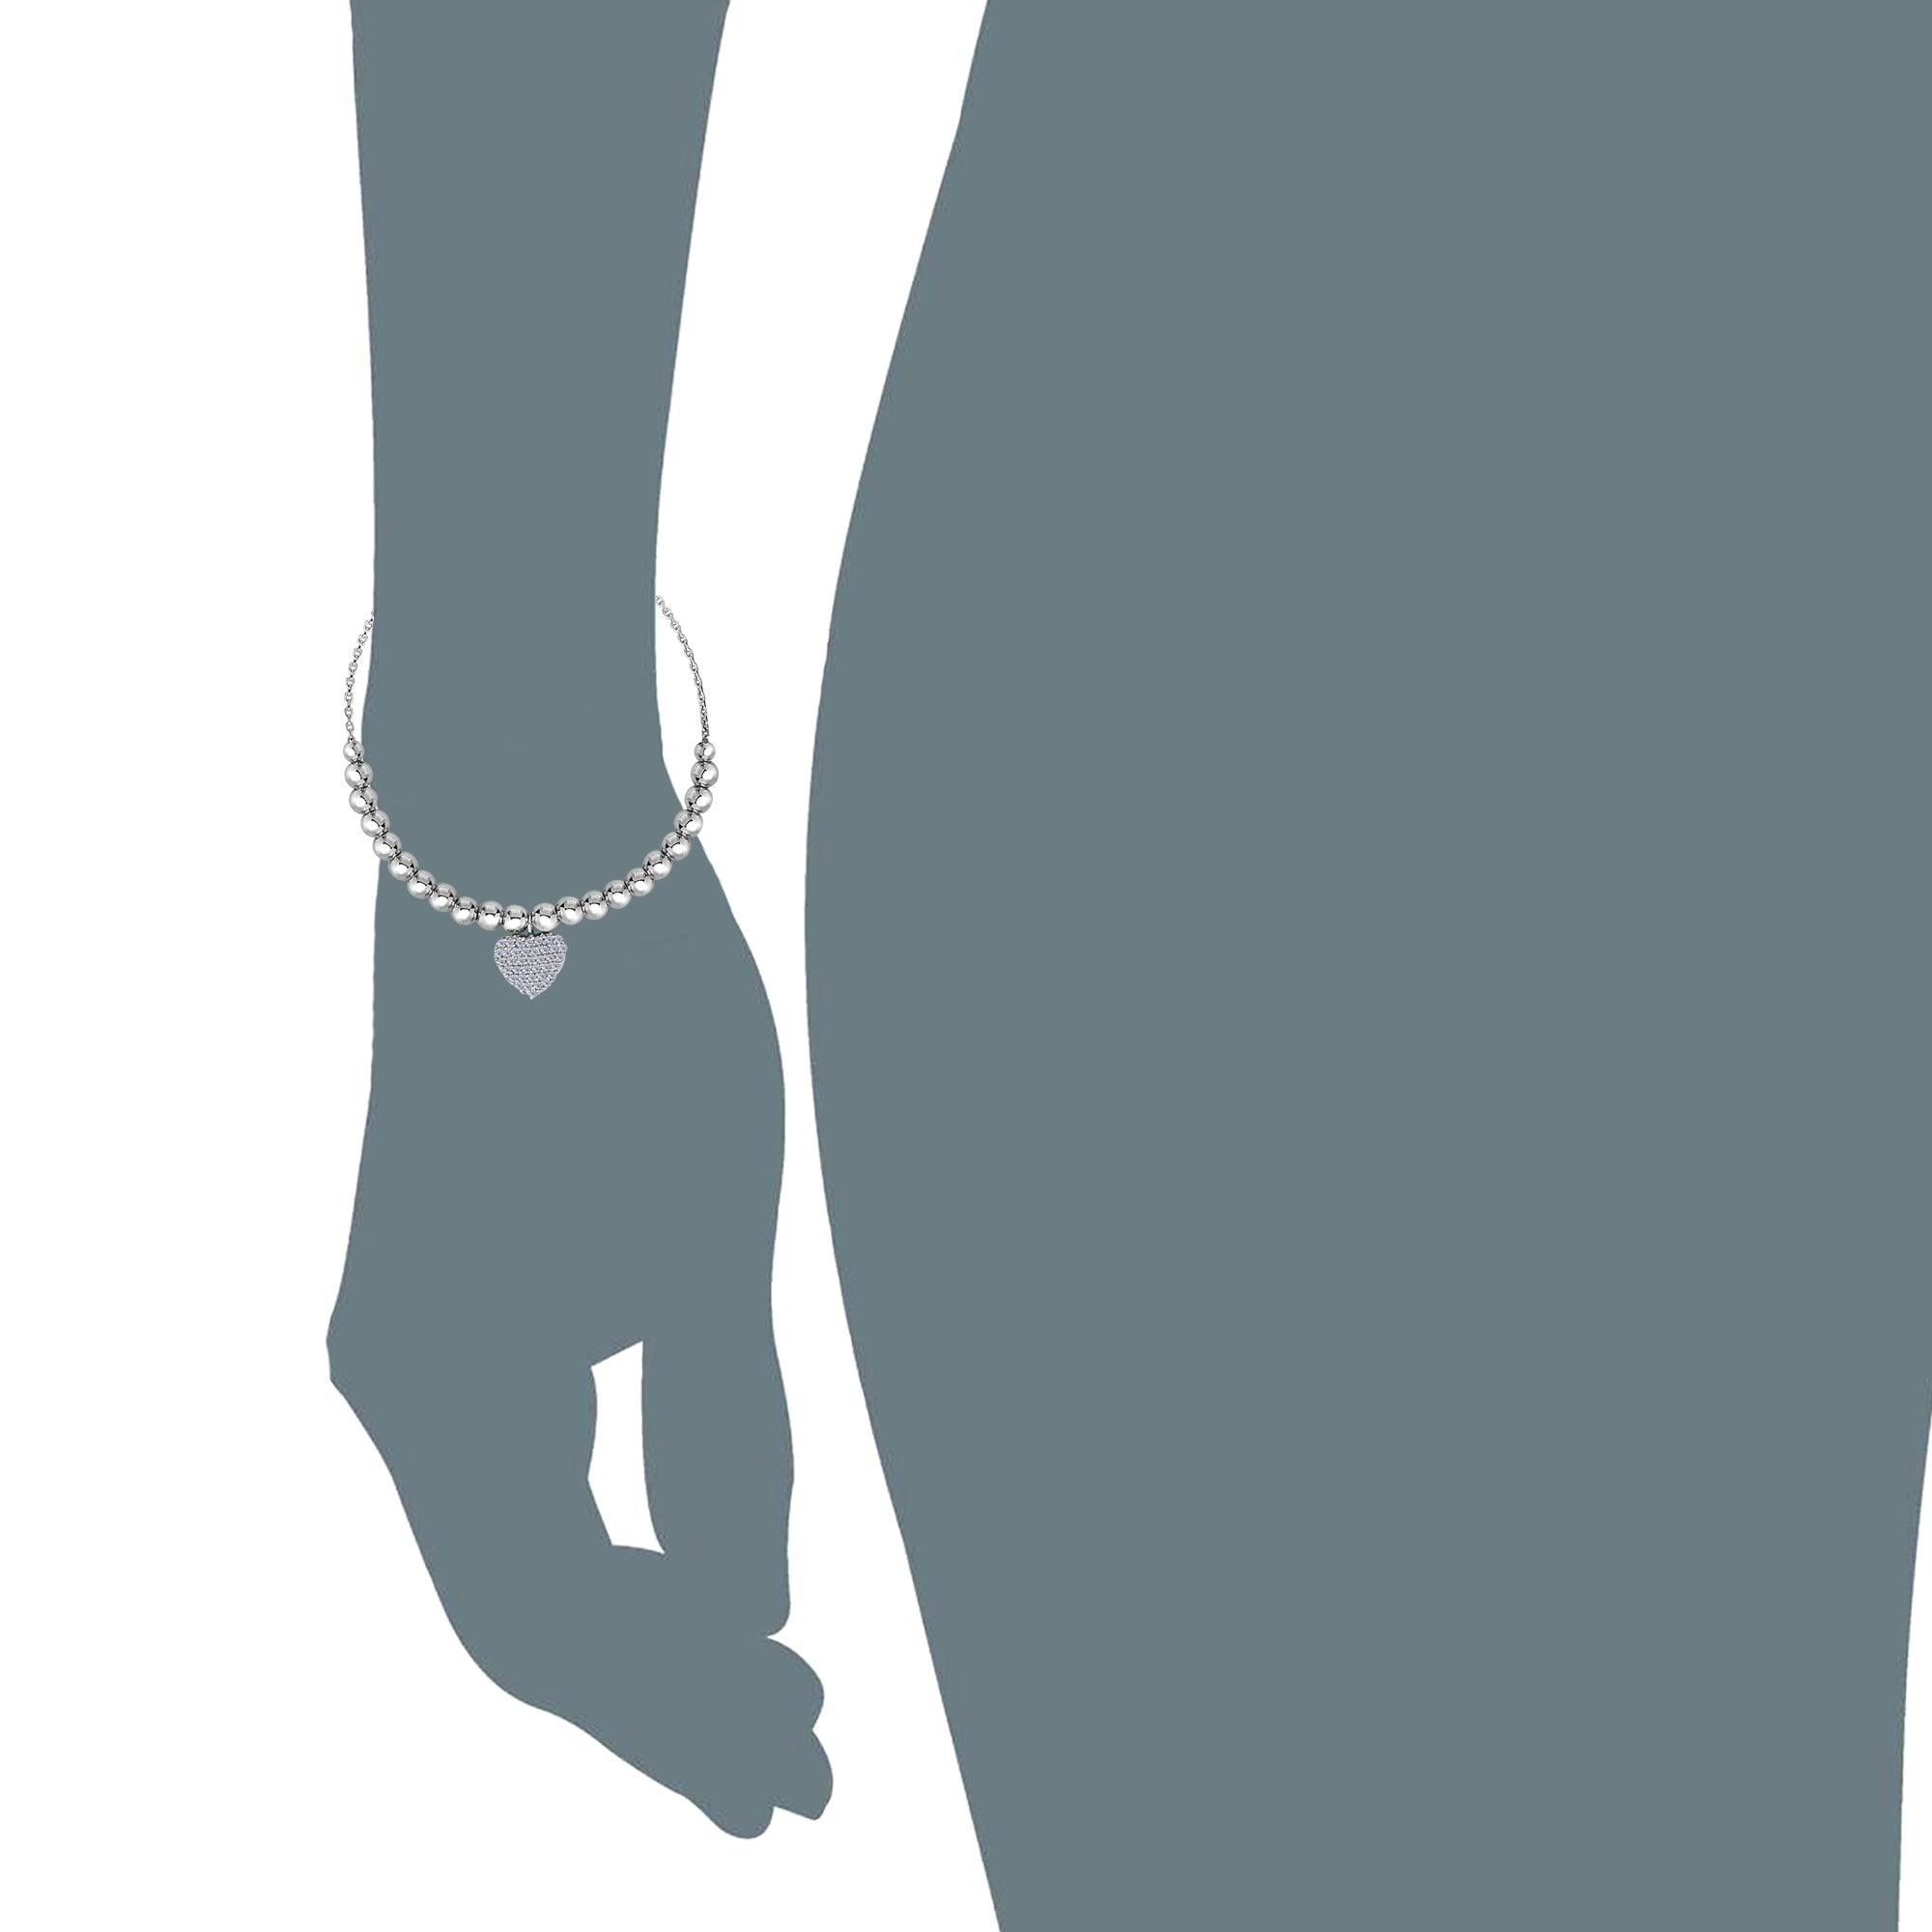 Perles en argent sterling et élément de charme de coeur CZ Bracelet d'amitié Bolo réglable, 9,25 "bijoux de créateurs fins pour hommes et femmes